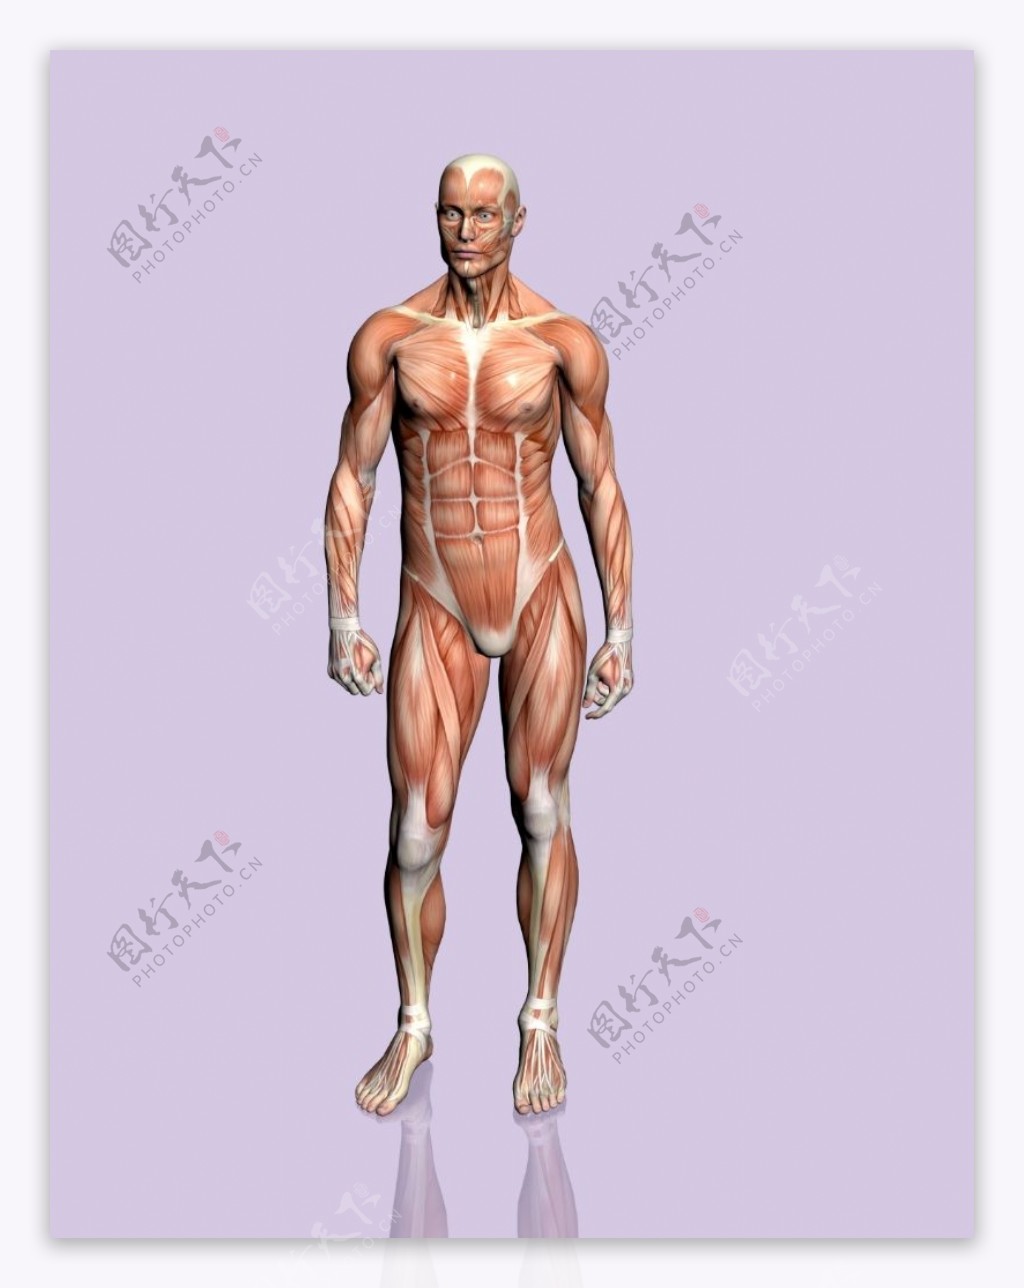 肌肉人体模型0135